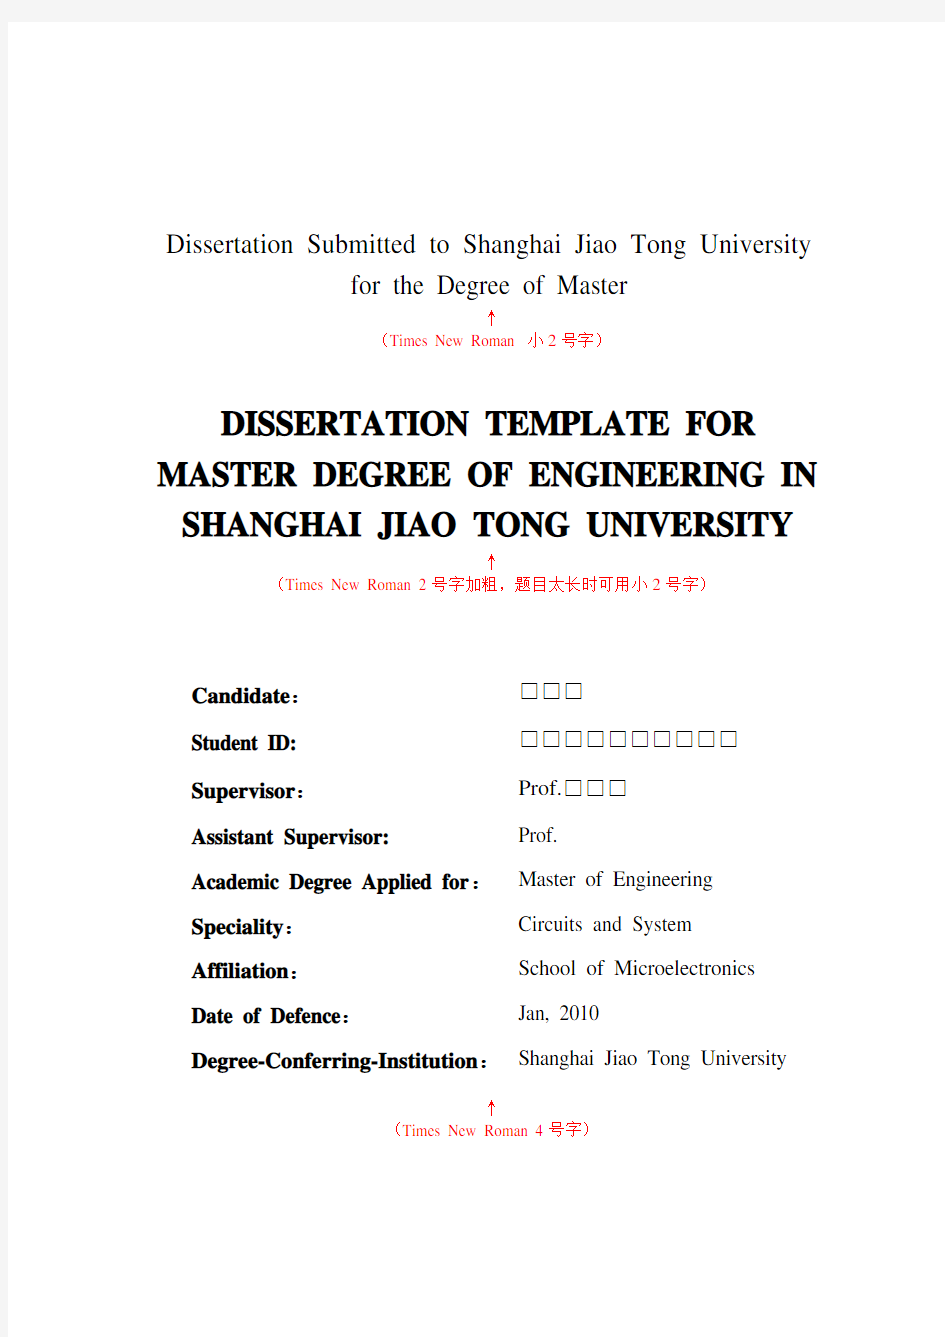 上海交通大学硕士学位论文格式模板